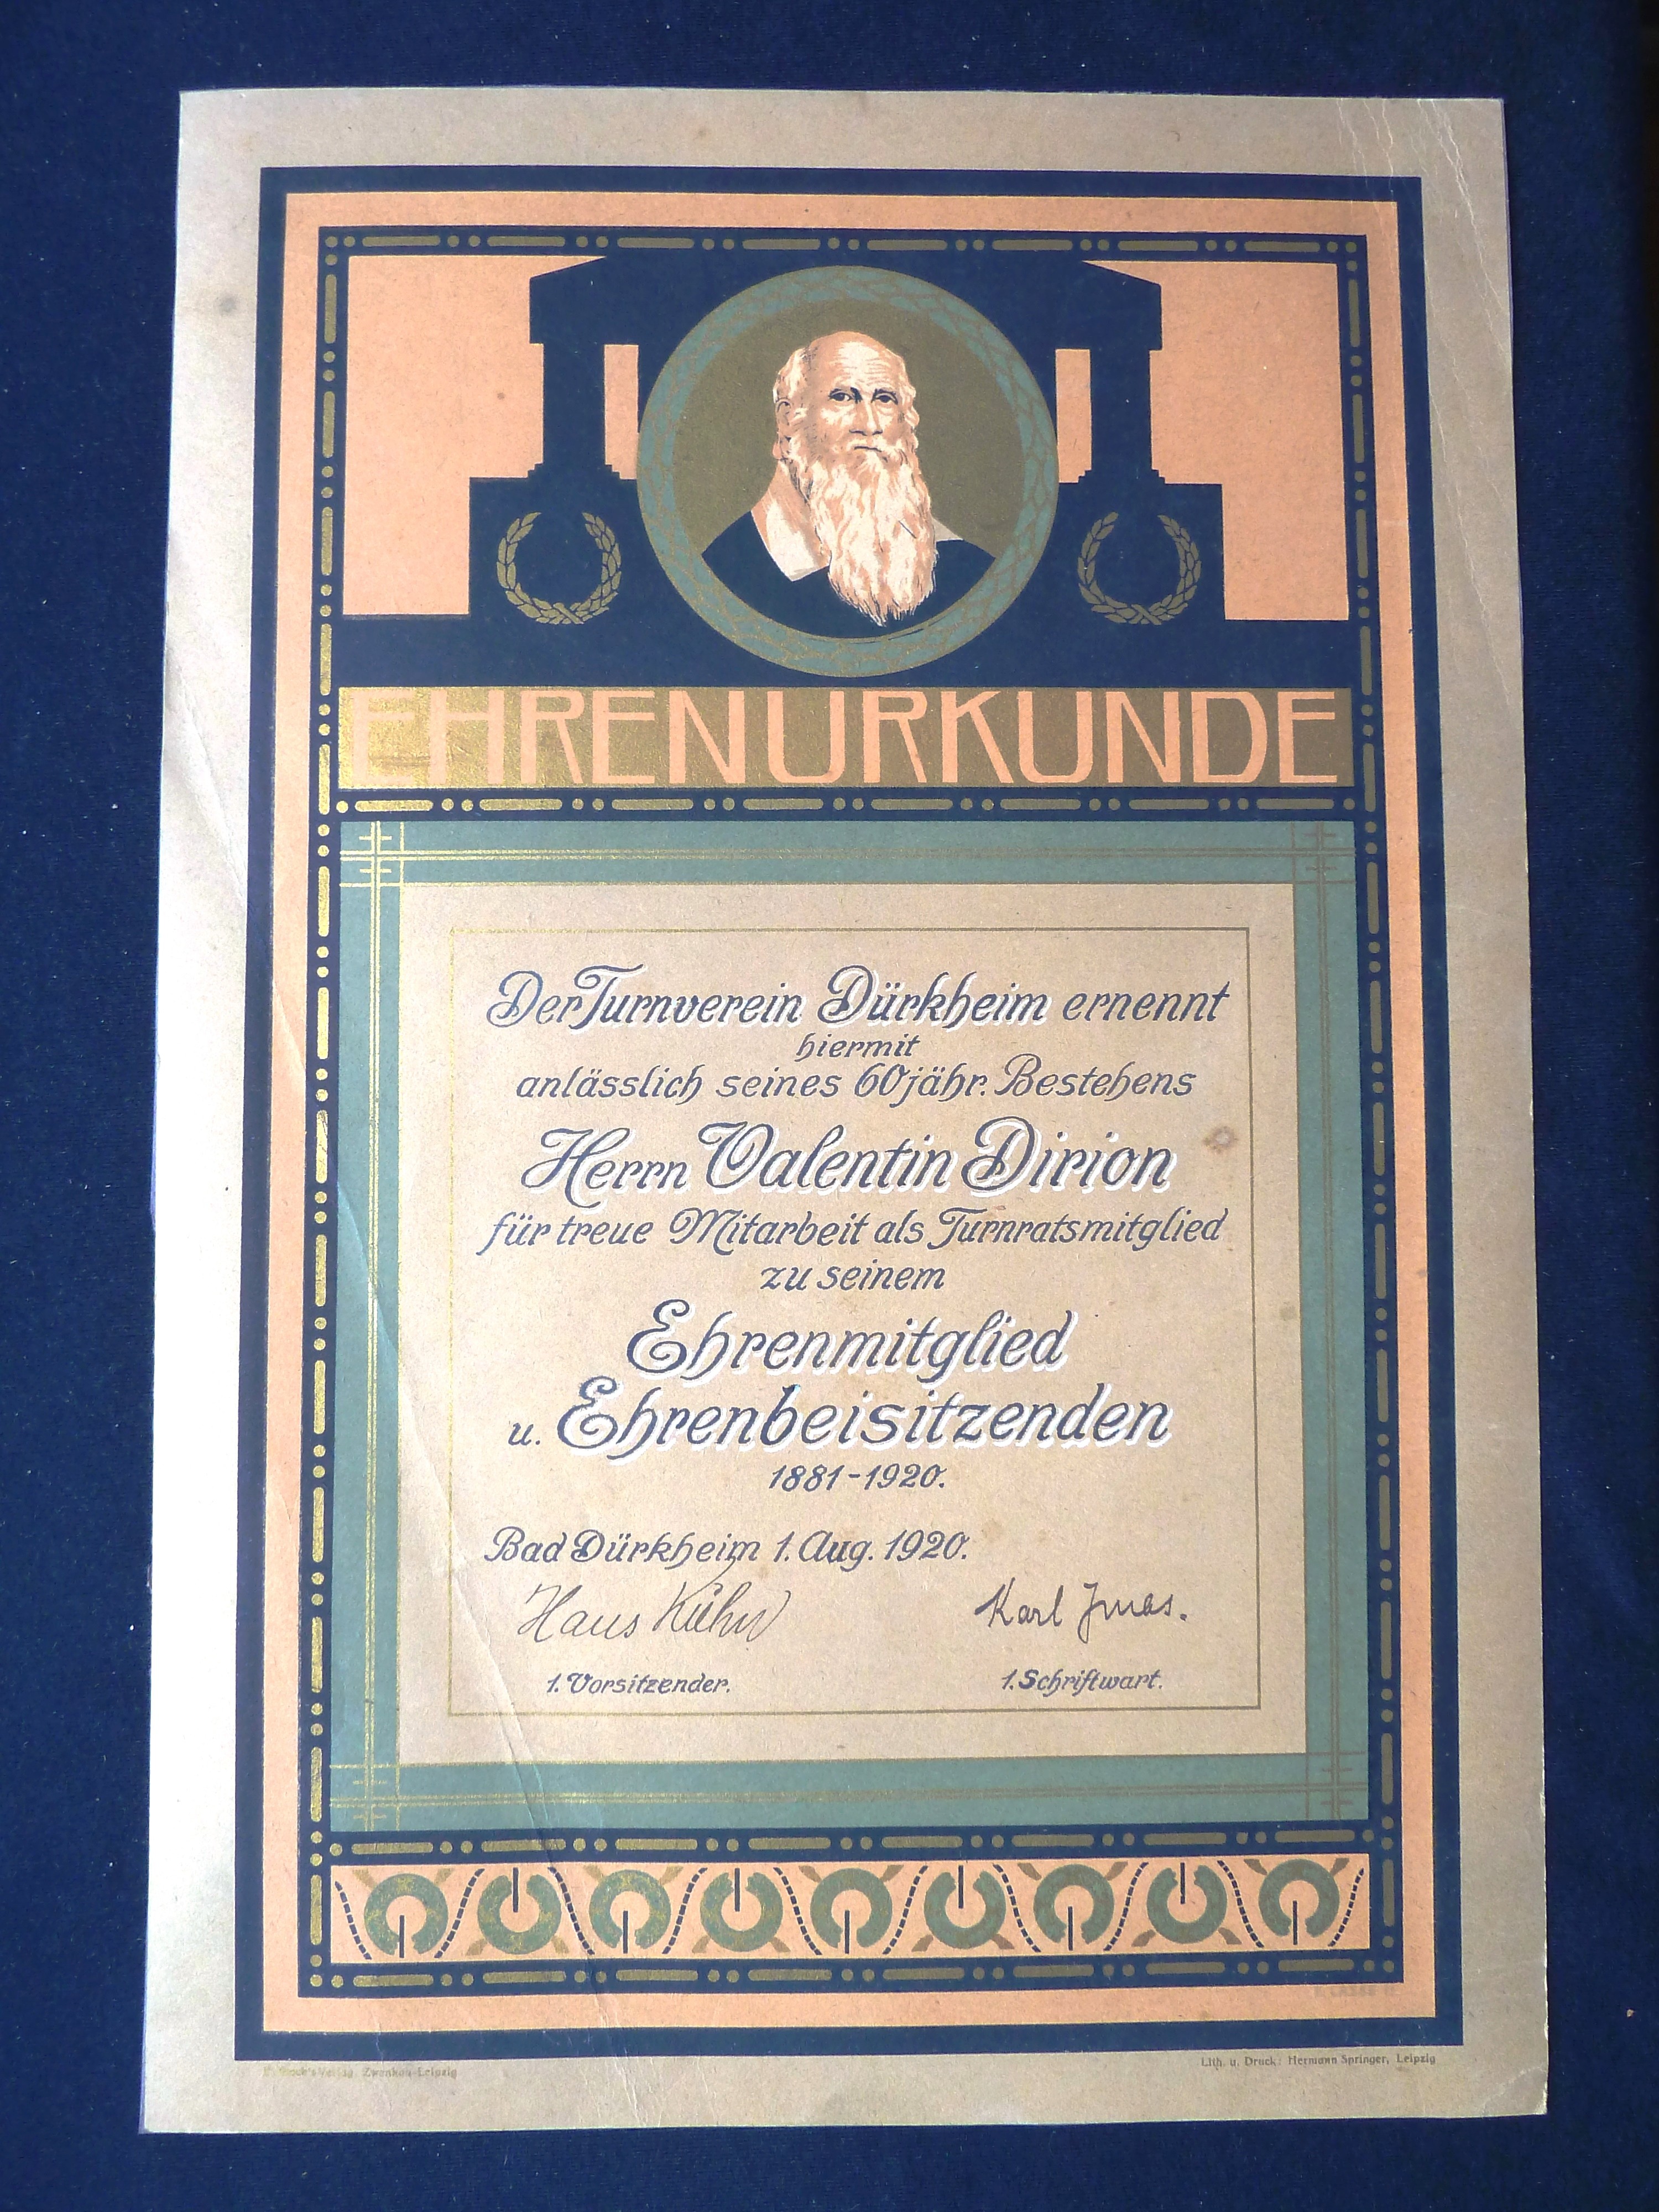 Bild; Zeichnung: Ehrenurkunde des Turnvereins Dürkheim für Herrn Valentin Dirion als Ehrenmitglied; Bad Dürkheim, 1.8.1920 (Stadtmuseum Bad Dürkheim, Museumsgesellschaft Bad Dürkheim e.V. CC BY-NC-SA)